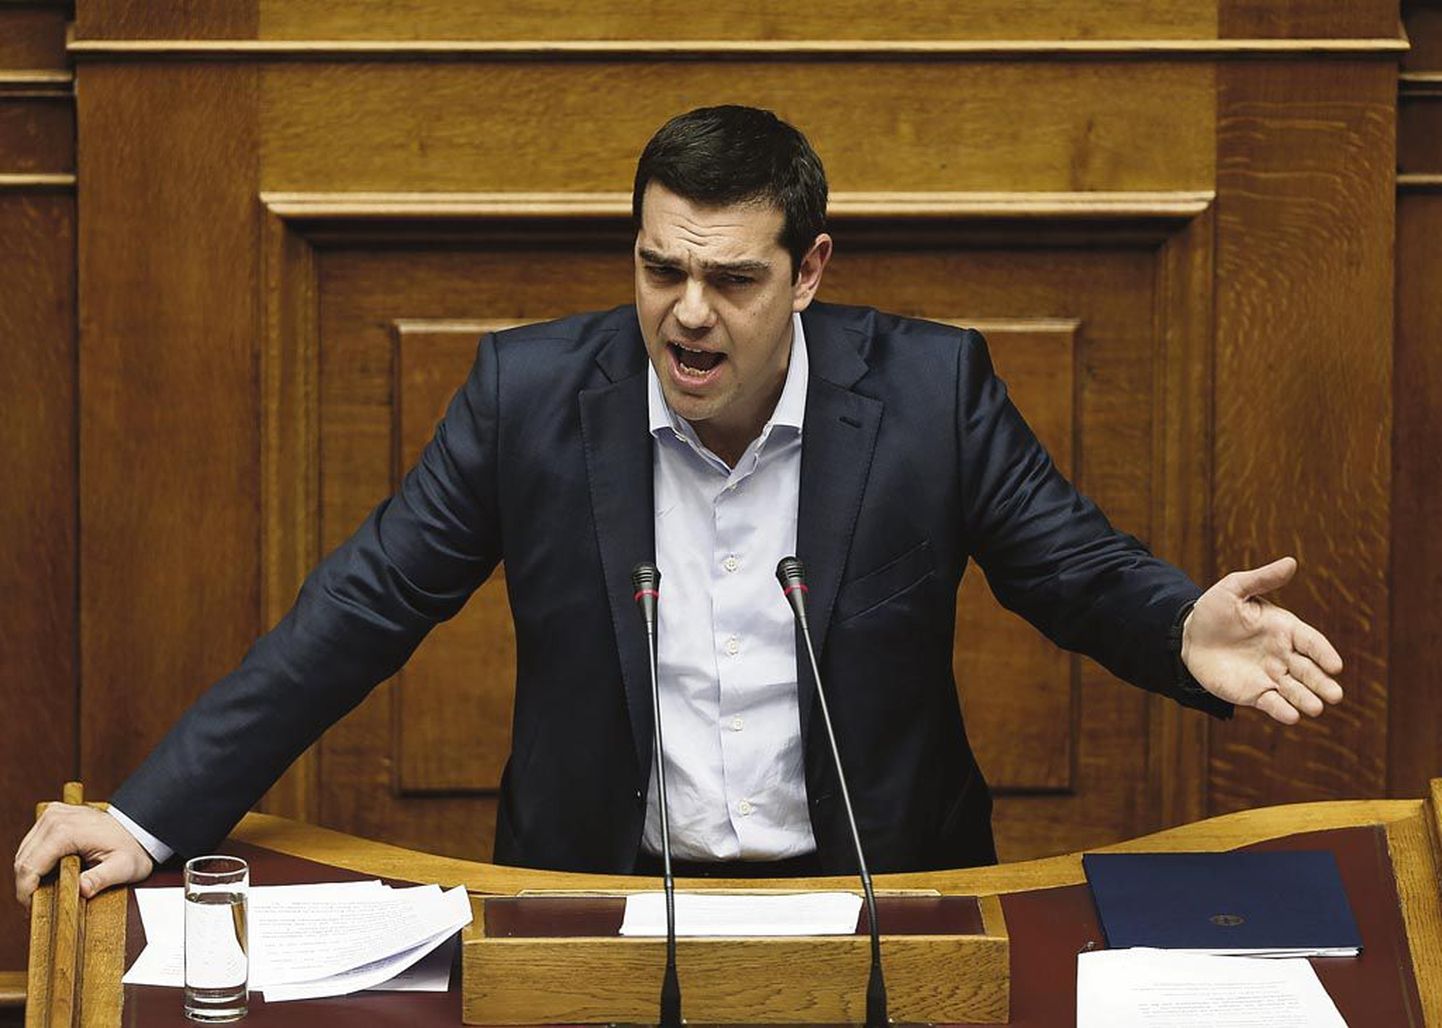 Laenuleivast ja laastutulest elatuva Kreeka peaminister Alexis Tsipras lubas, et valitsus on valmis rakendama peamiste laenuandjatega saavutatud kokkulepet, kuid mitte iga hinna eest. Kreekale on võlgu elamine normaalne.